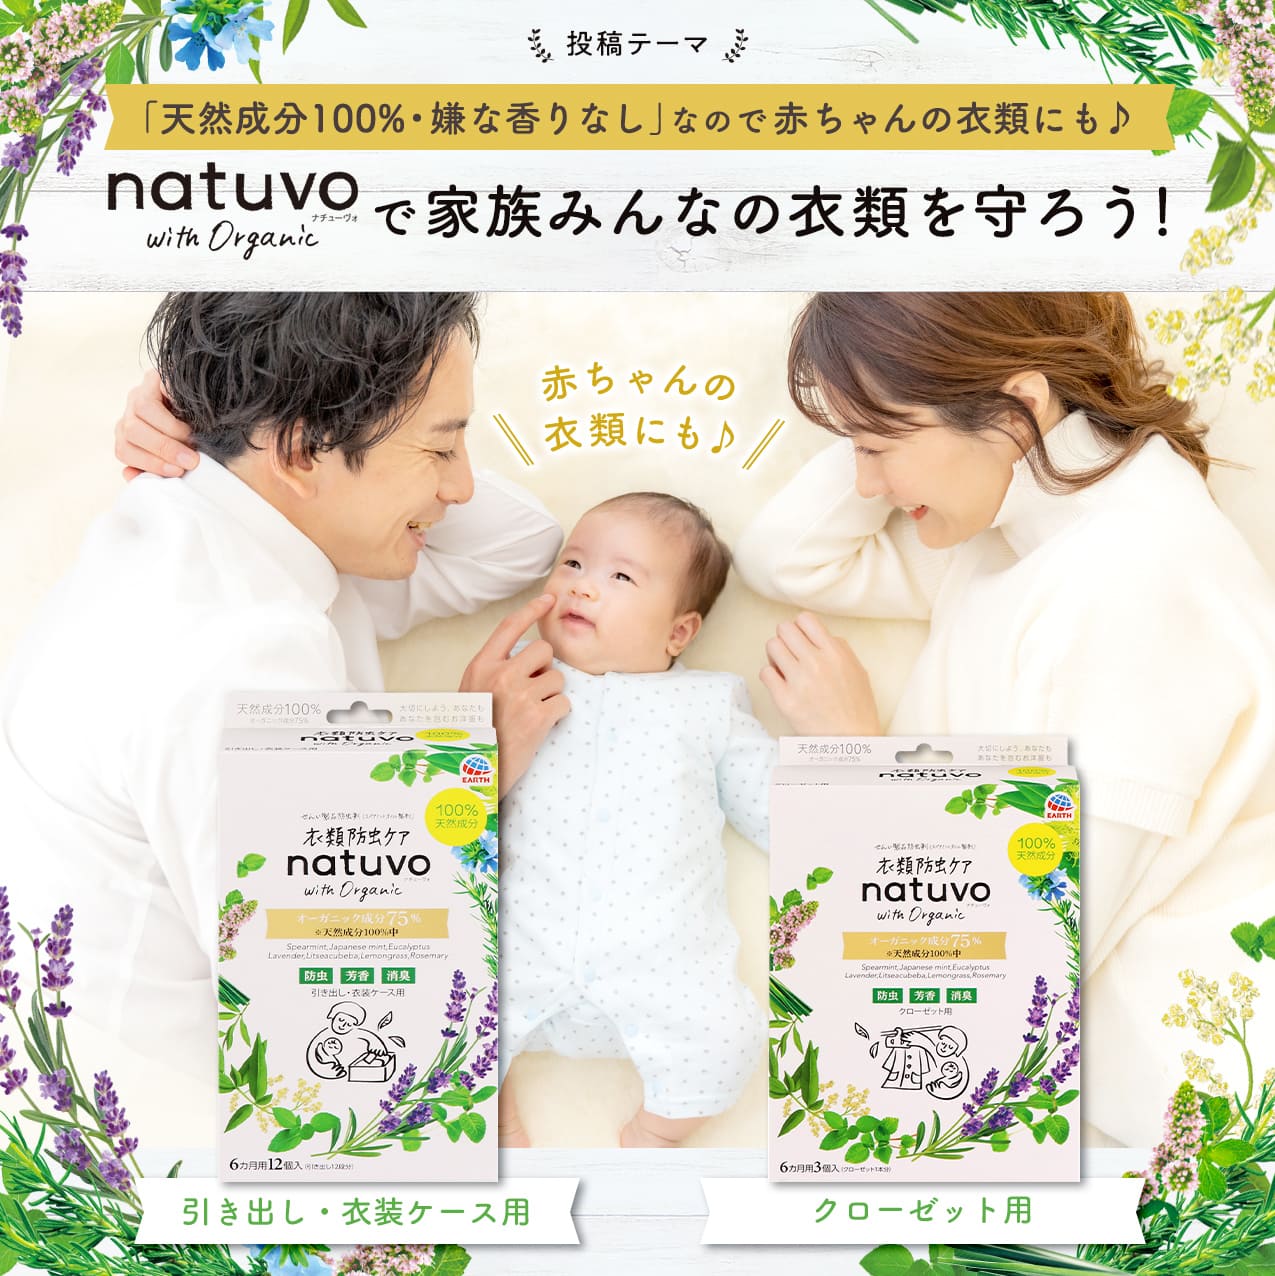 「天然成分100%・嫌な香りなし」なので赤ちゃんの衣類にも♪「natuvo」で家族みんなの衣類を守ろう！